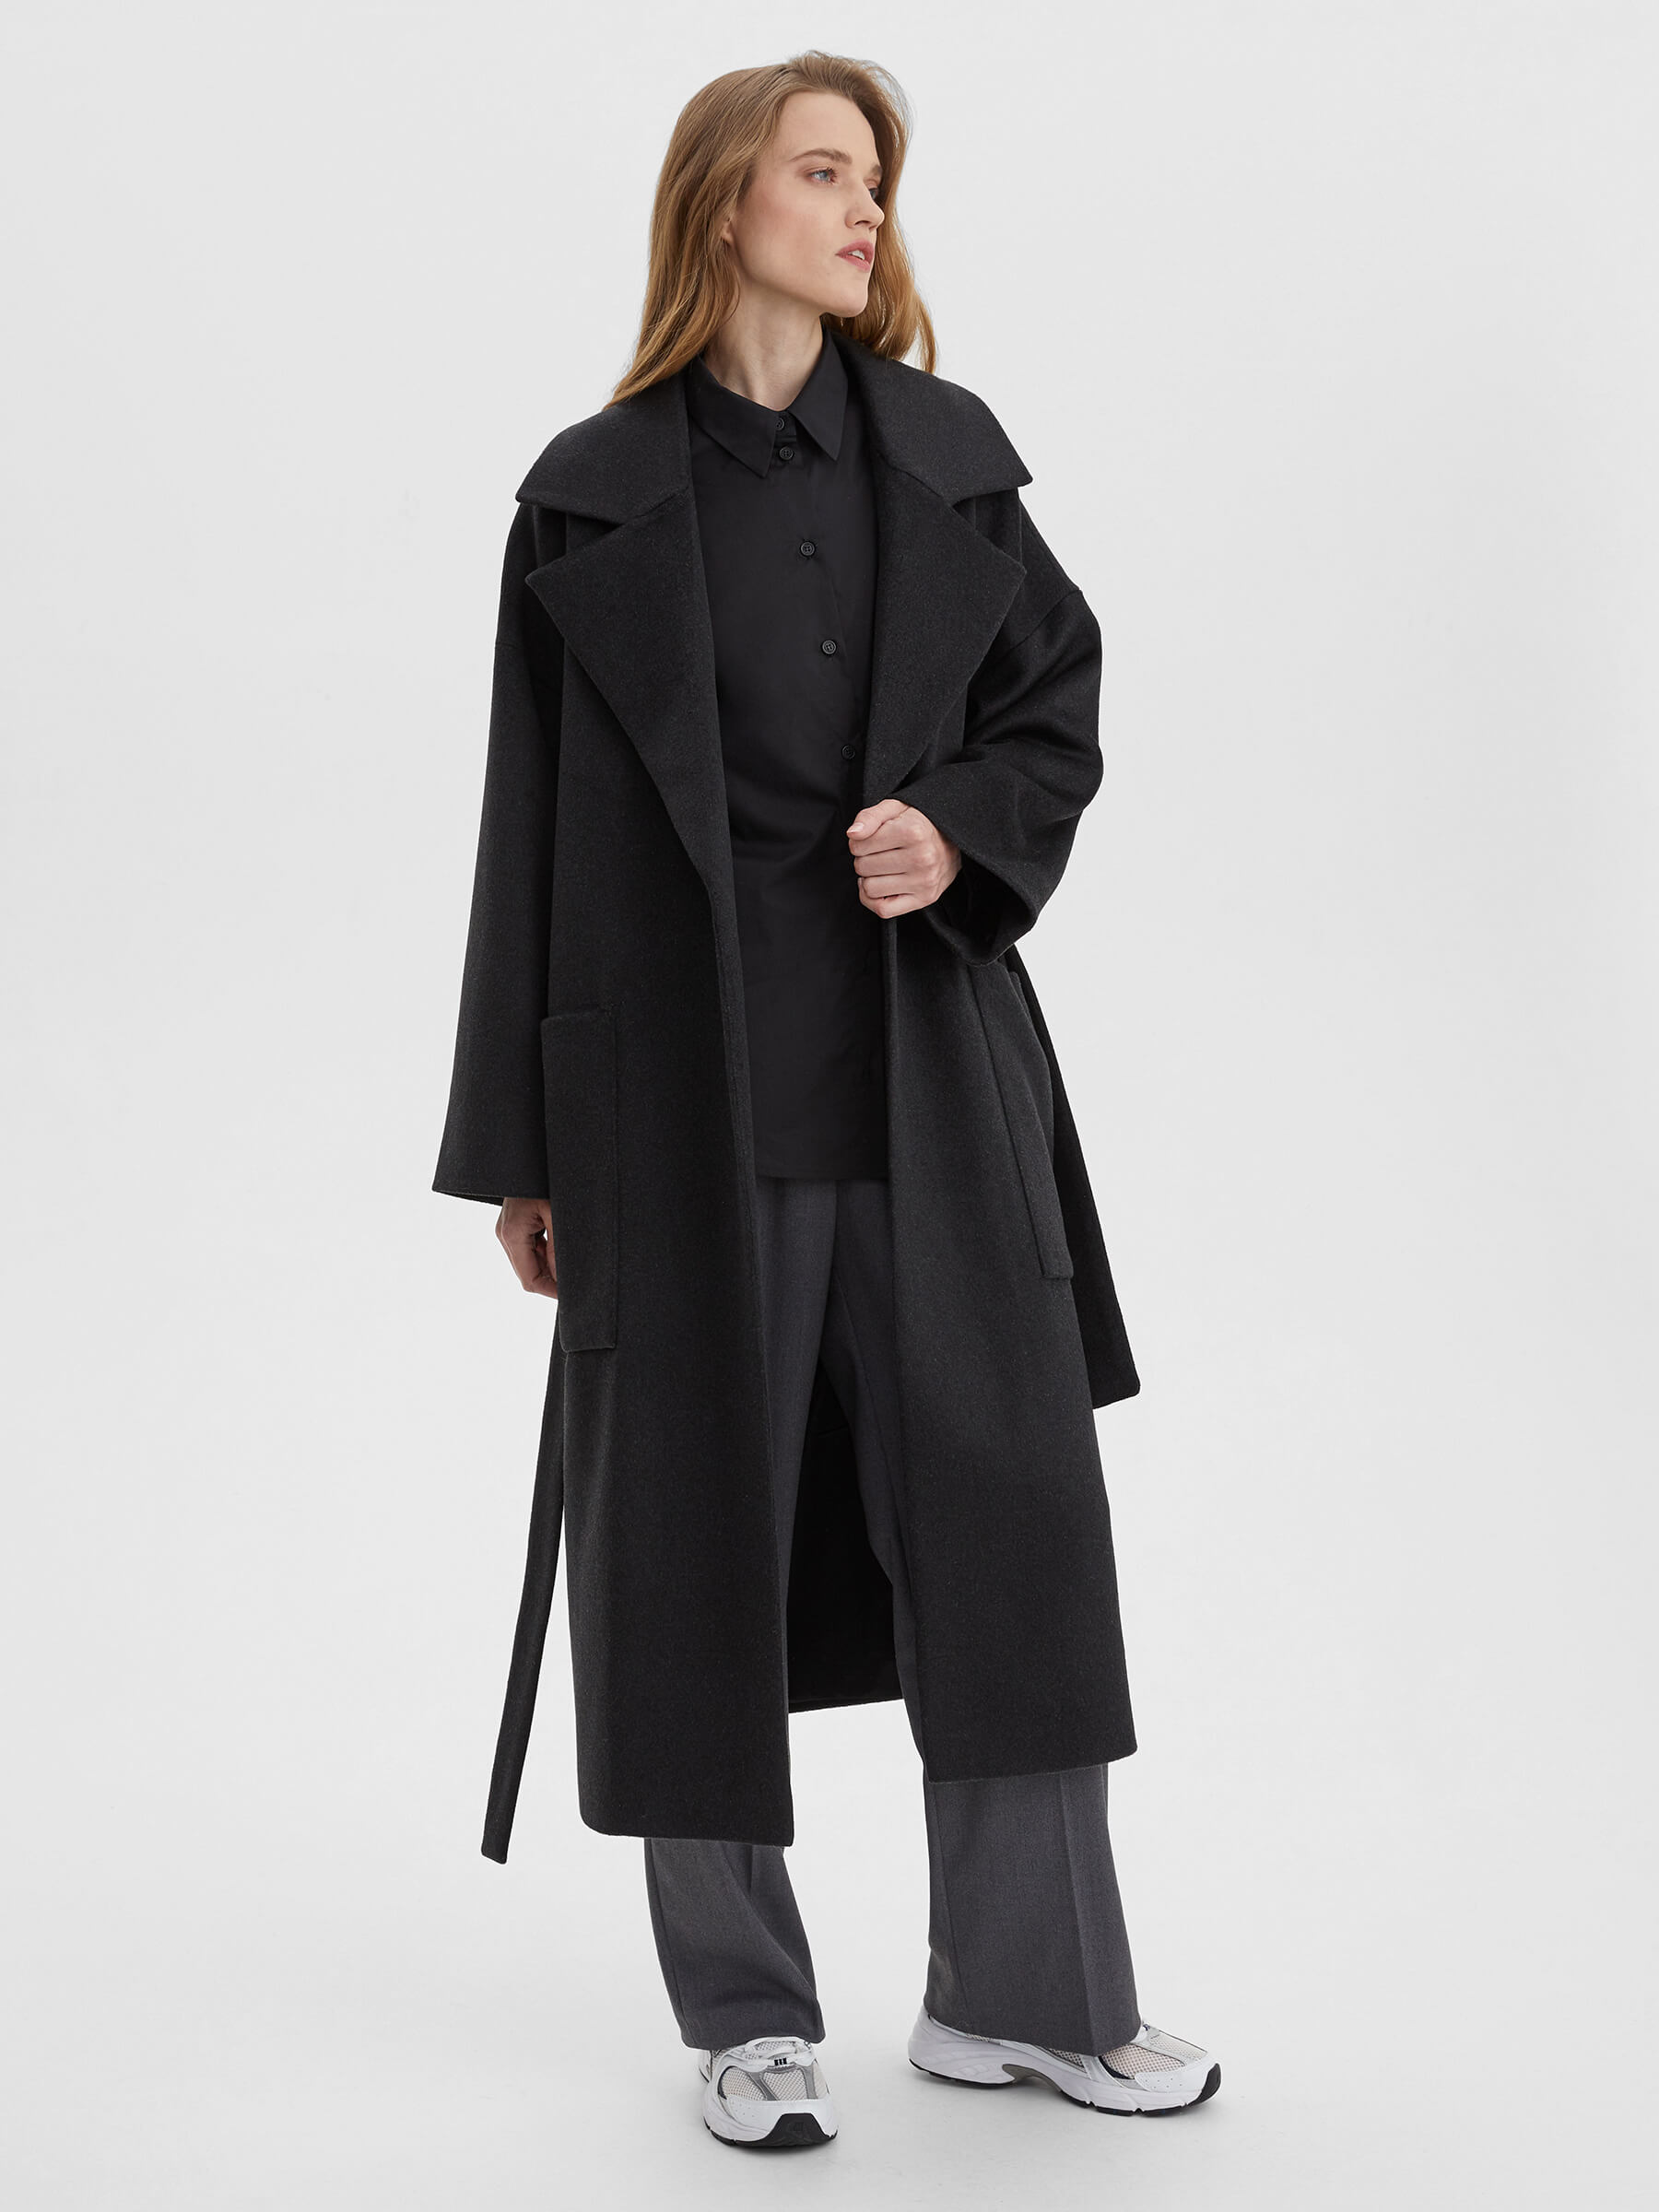 Пальто женское длинное с объемными карманами и поясом, цвет – антрацит